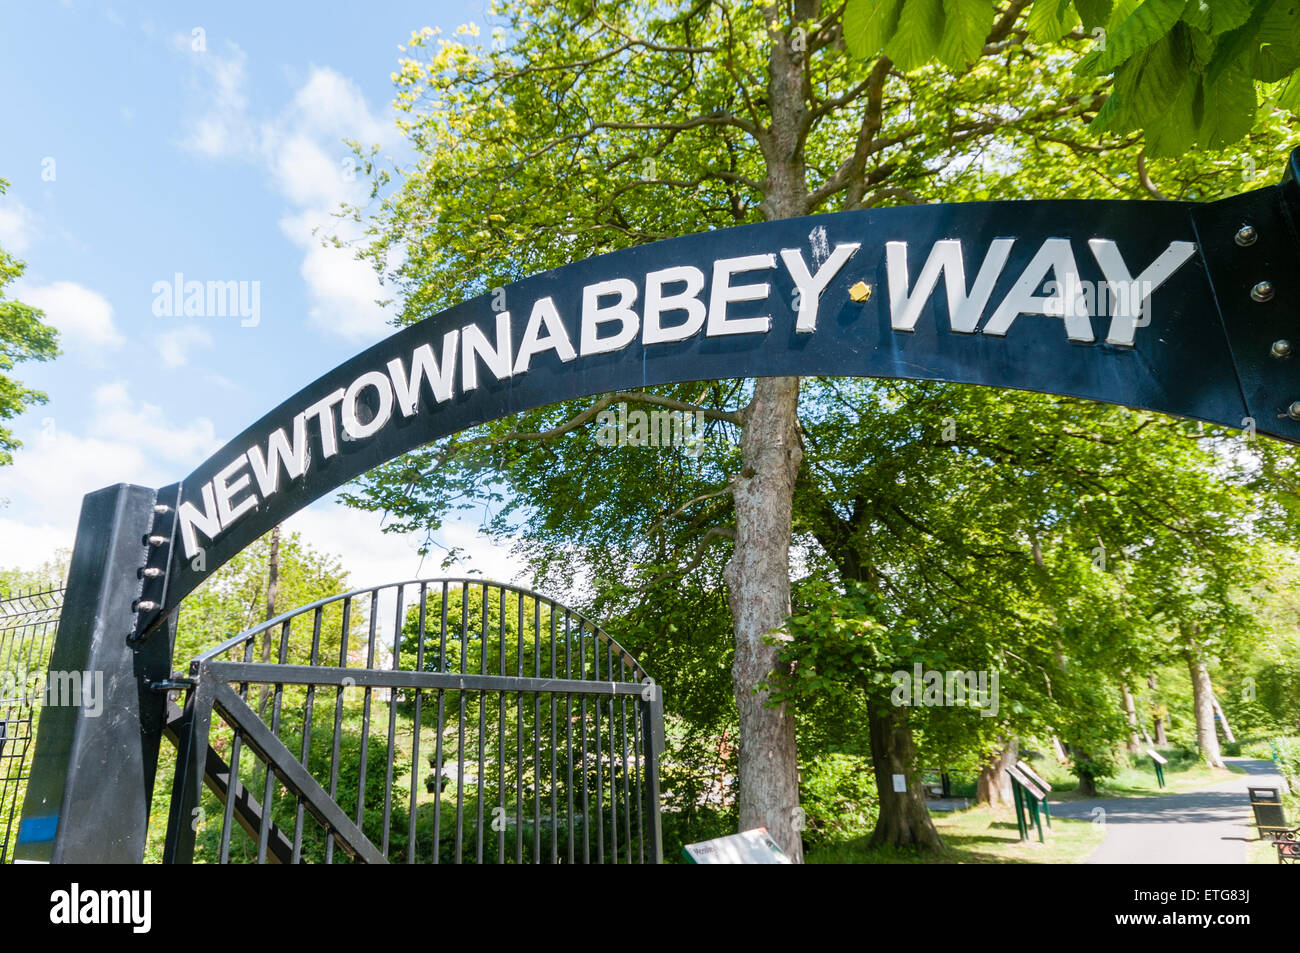 Newtownabbey Way walking route dans le comté d'Antrim, en Irlande du Nord Banque D'Images